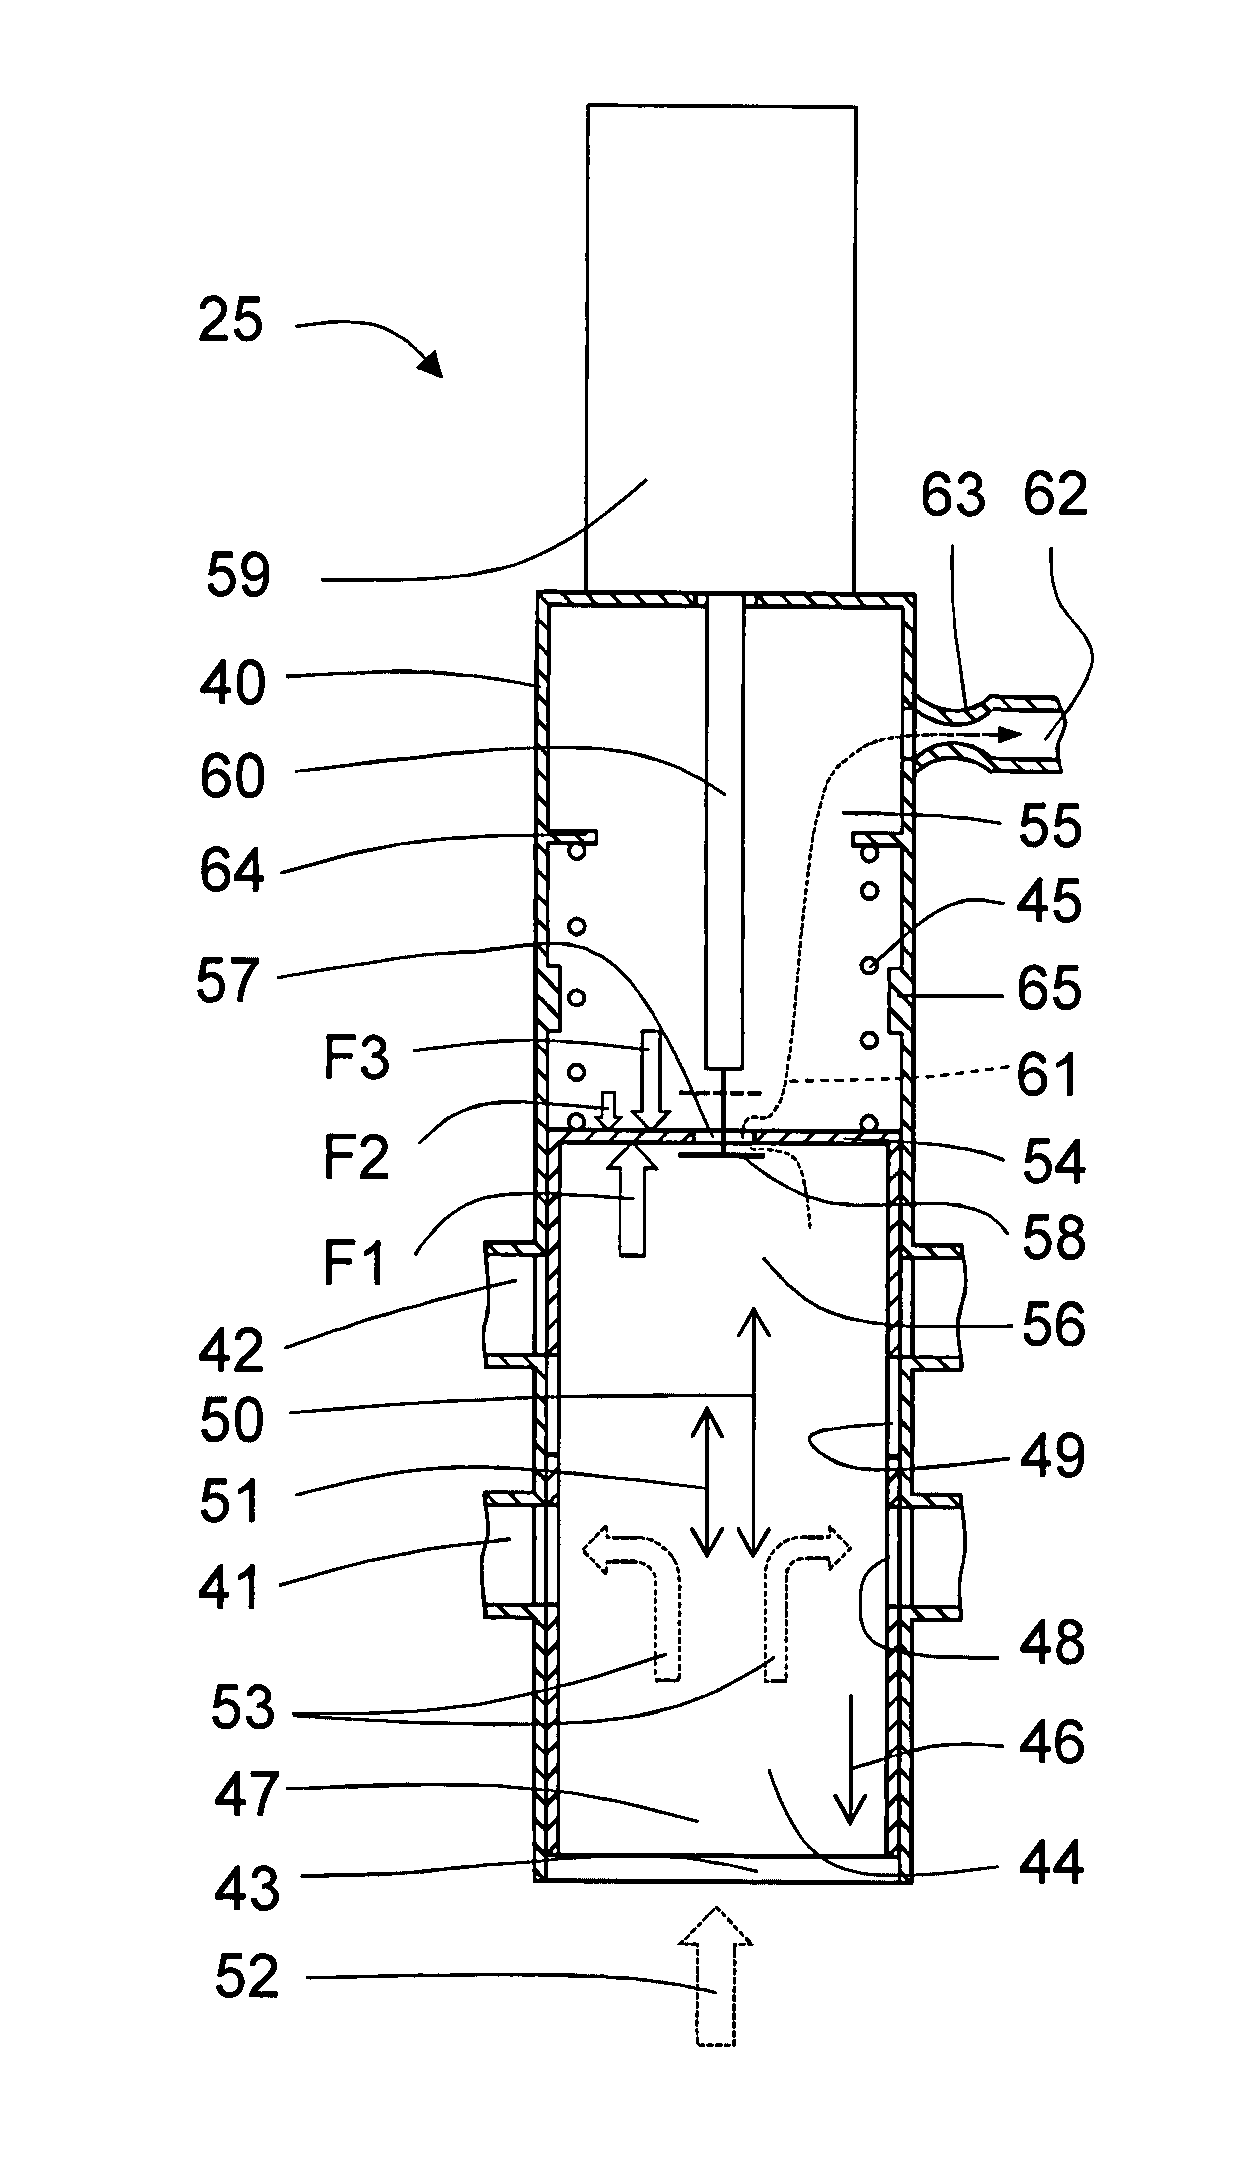 A fluid control valve